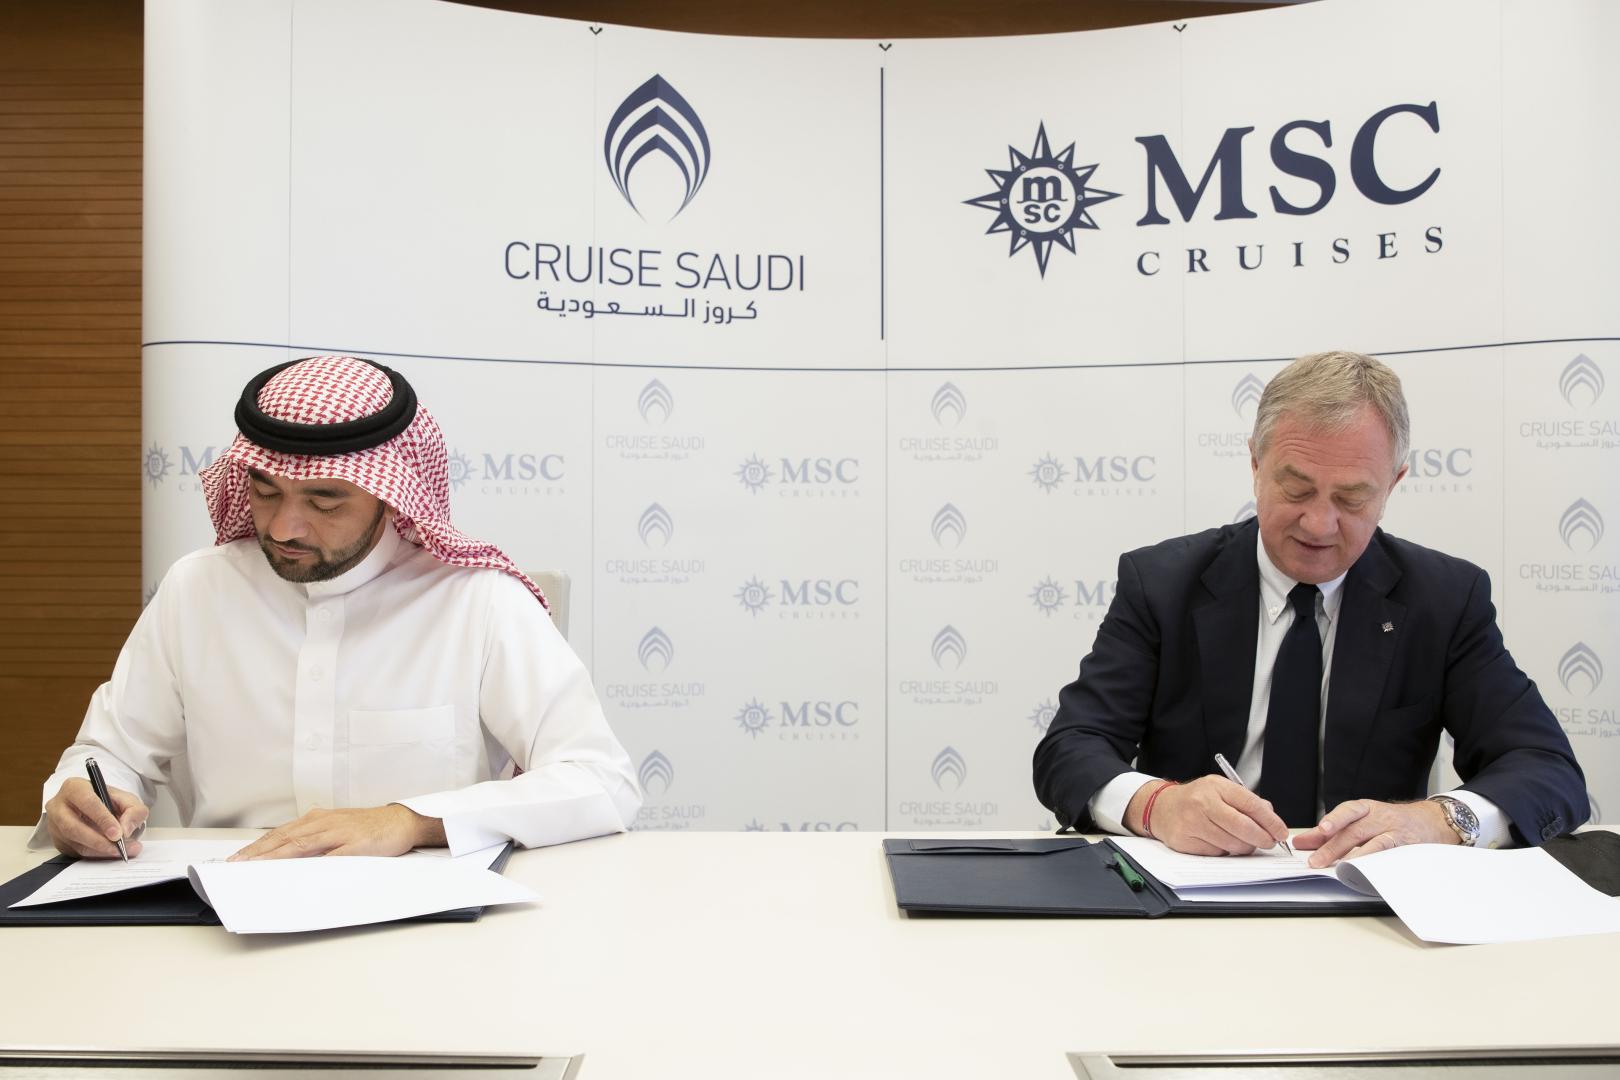 Storico accordo siglato tra MSC Crociere e Cruise Saudi